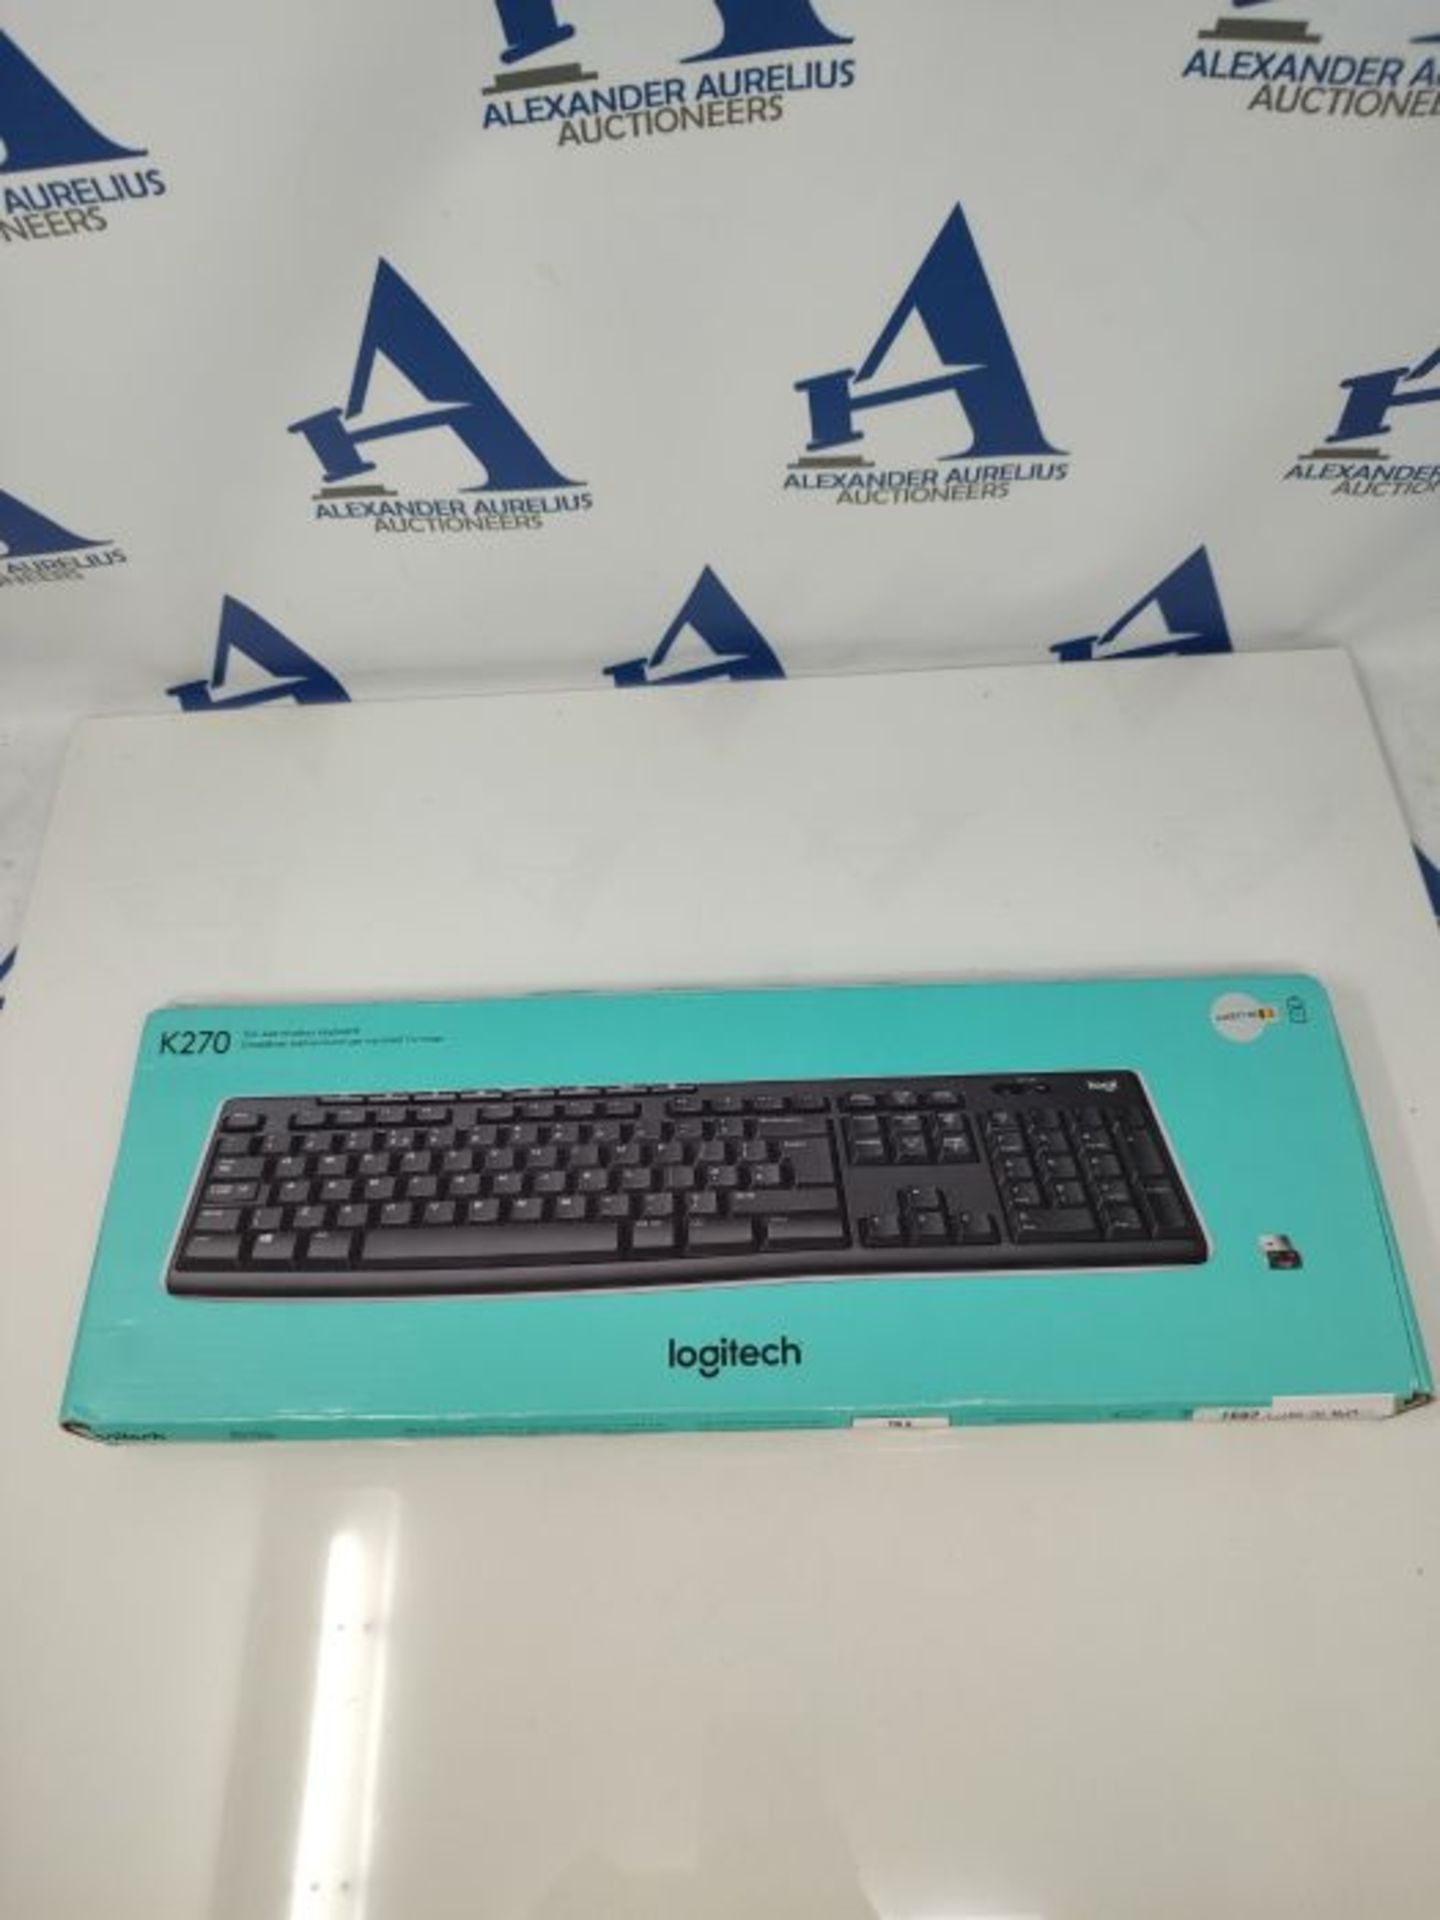 Logitech K270 Wireless Keyboard for Windows, AZERTY Belgian Layout - Black - Image 2 of 3